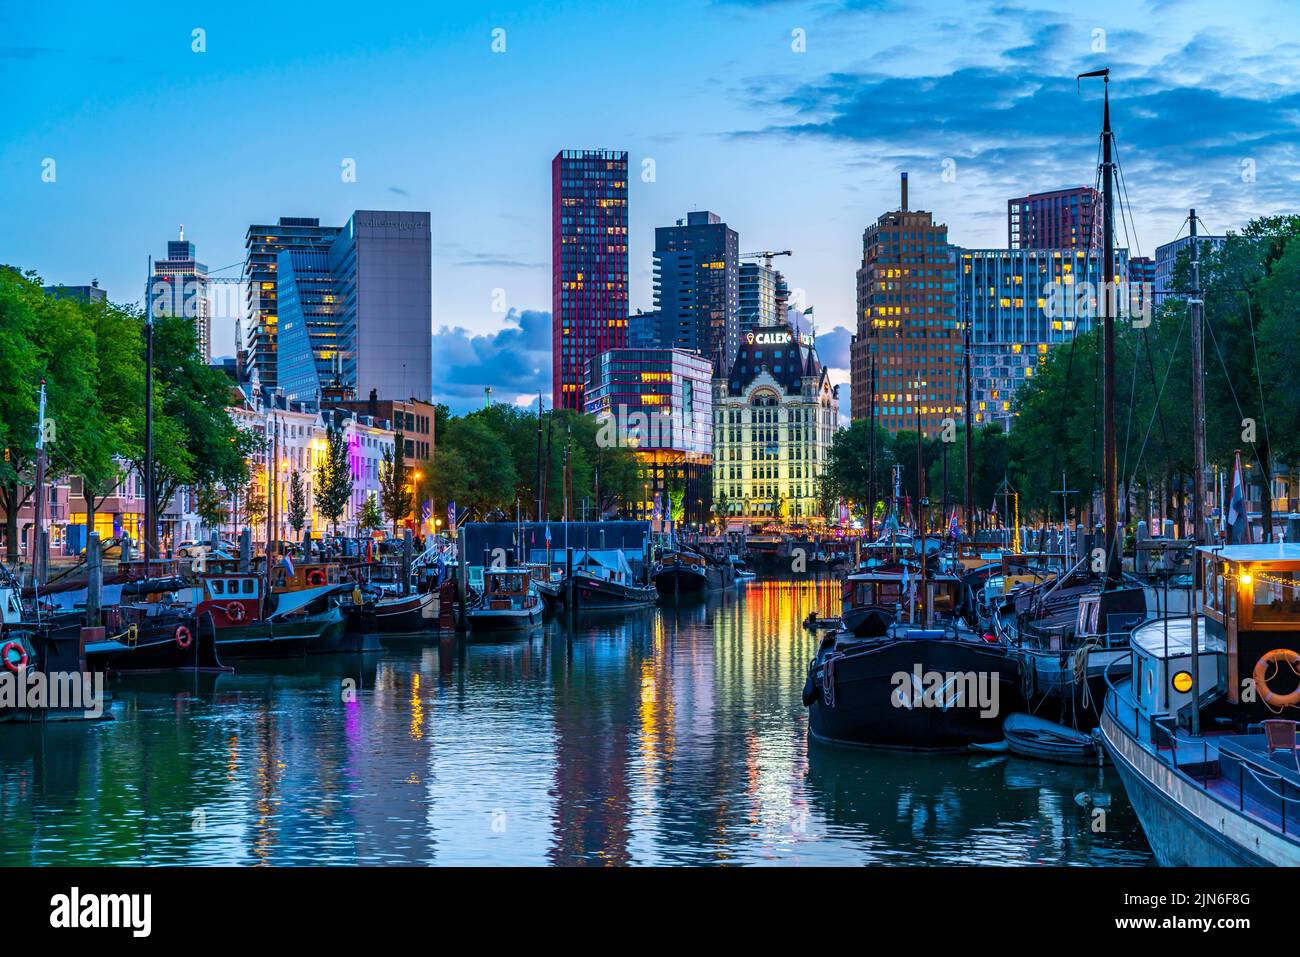 Centro de Rotterdam, Oudehaven, puerto histórico, la Casa Blanca, edificio histórico de oficinas, Barcos históricos, ciudad moderna telón de fondo, Países Bajos, Foto de stock